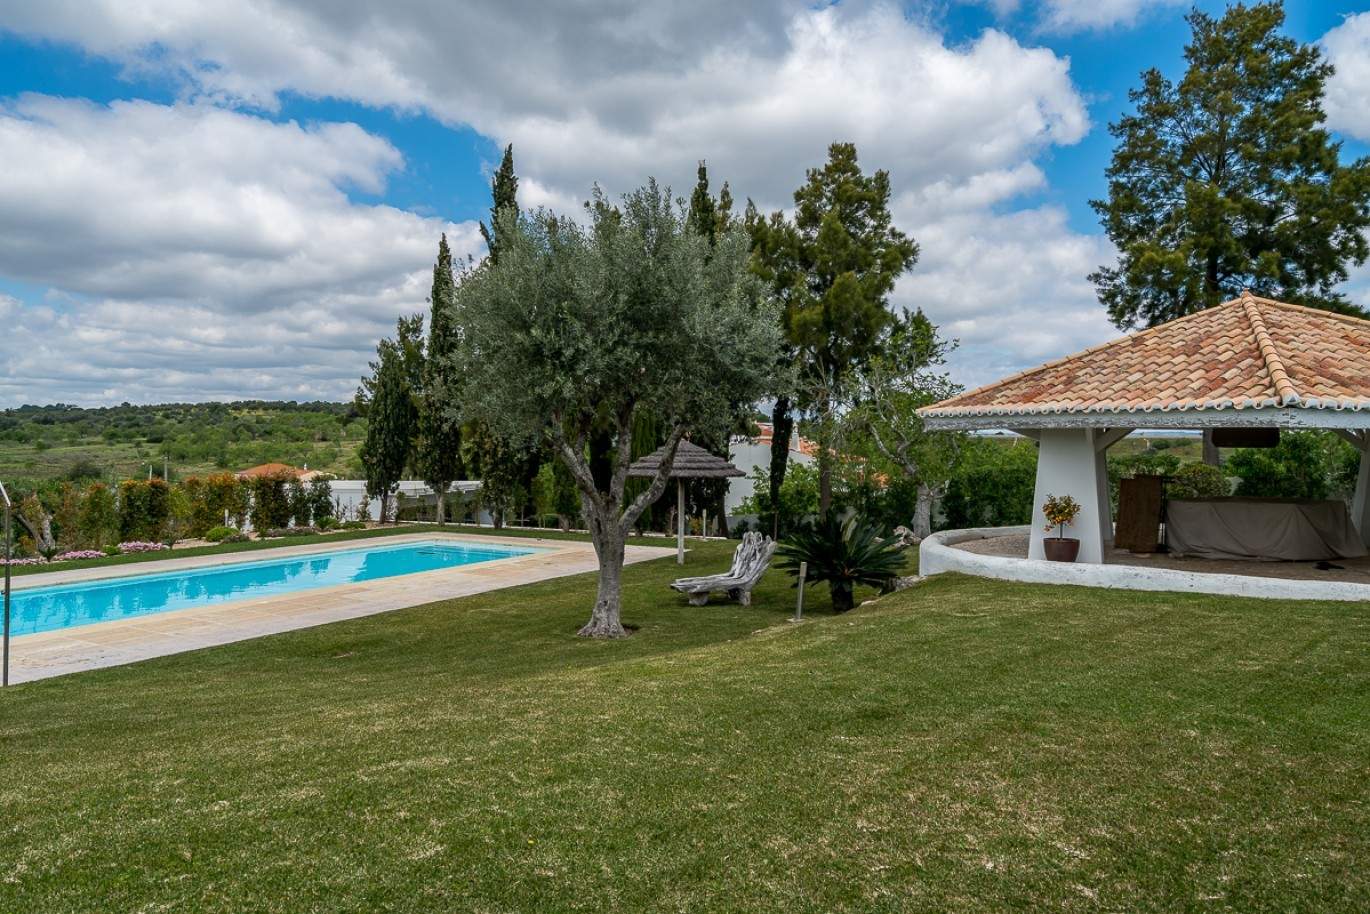 Venda de moradia de alto padrão com piscina, Silves, Algarve, Portugal_77337